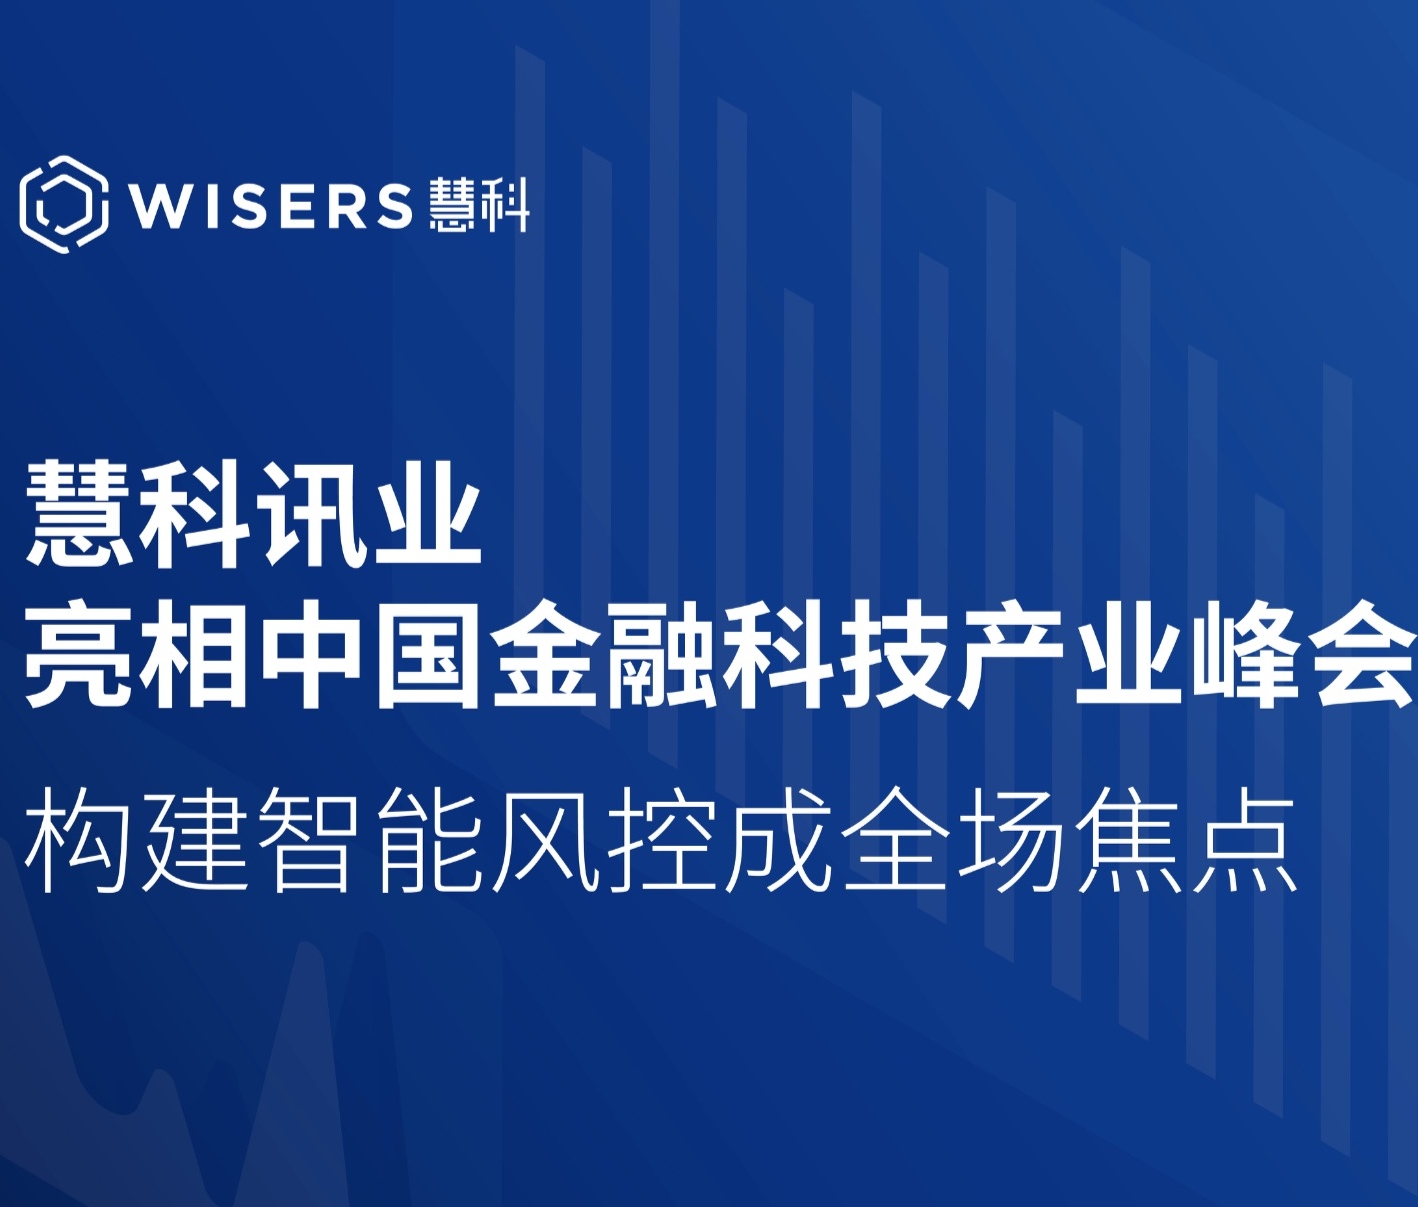 慧科讯业亮相中国金融科技产业峰会 构建智能风控成全场焦点